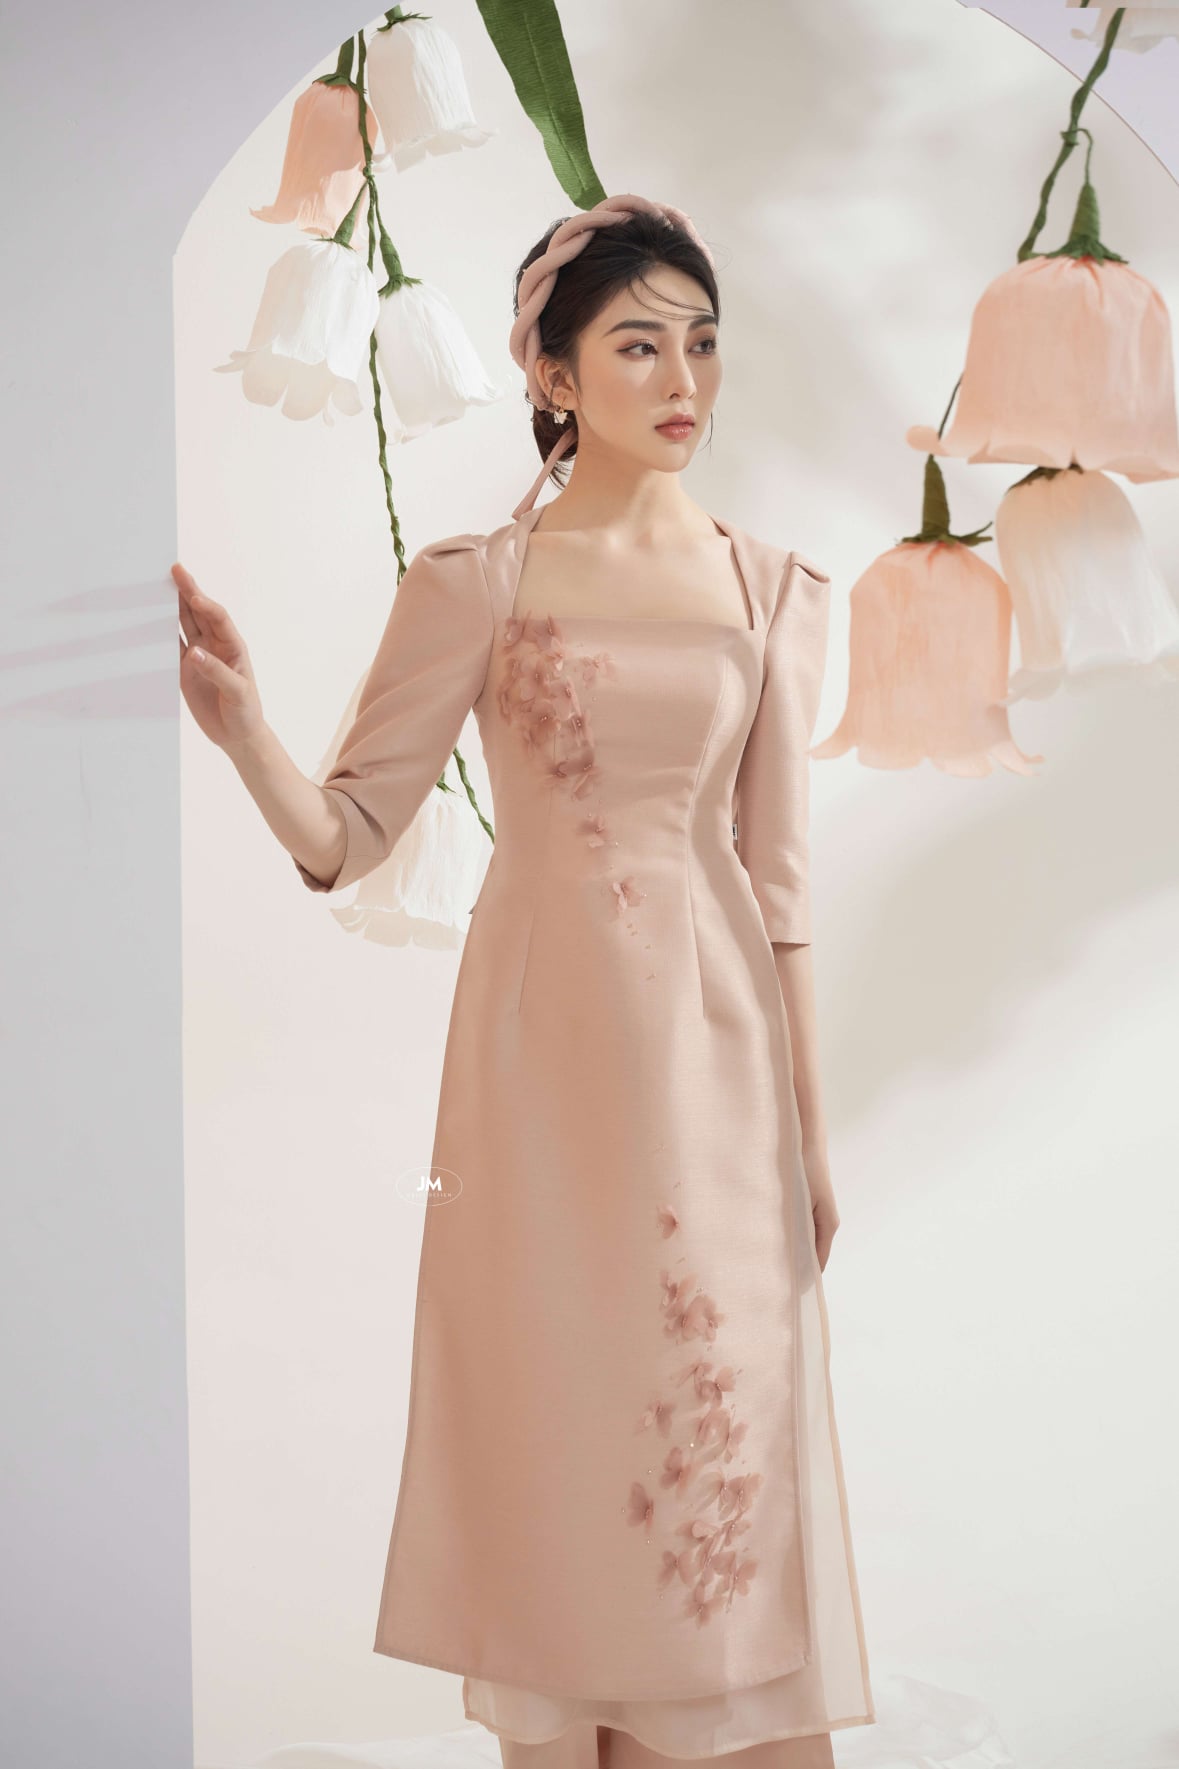 Siêu mẫu Thanh Hằng gợi ý cách chọn áo dài cách tân diện Tết  Thời trang   Vietnam VietnamPlus